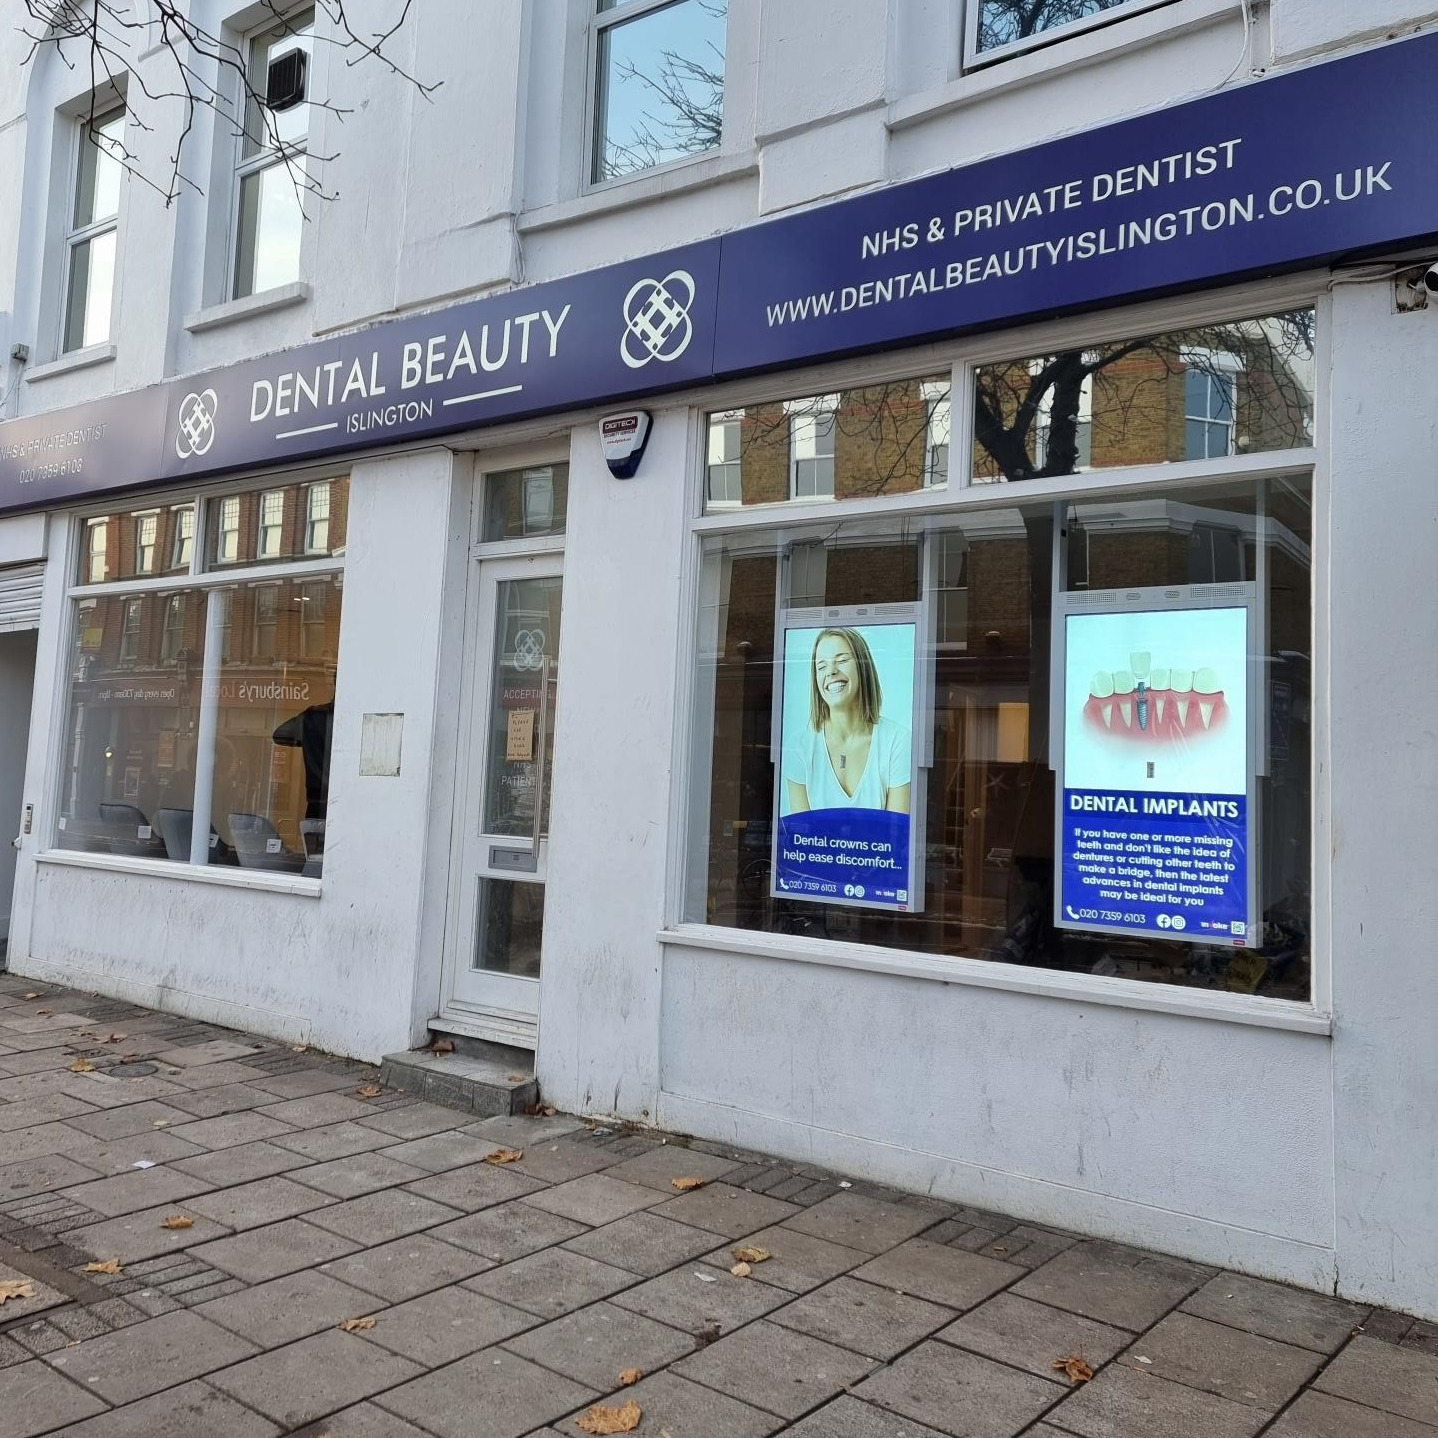 dental beauty islington signs in shop window